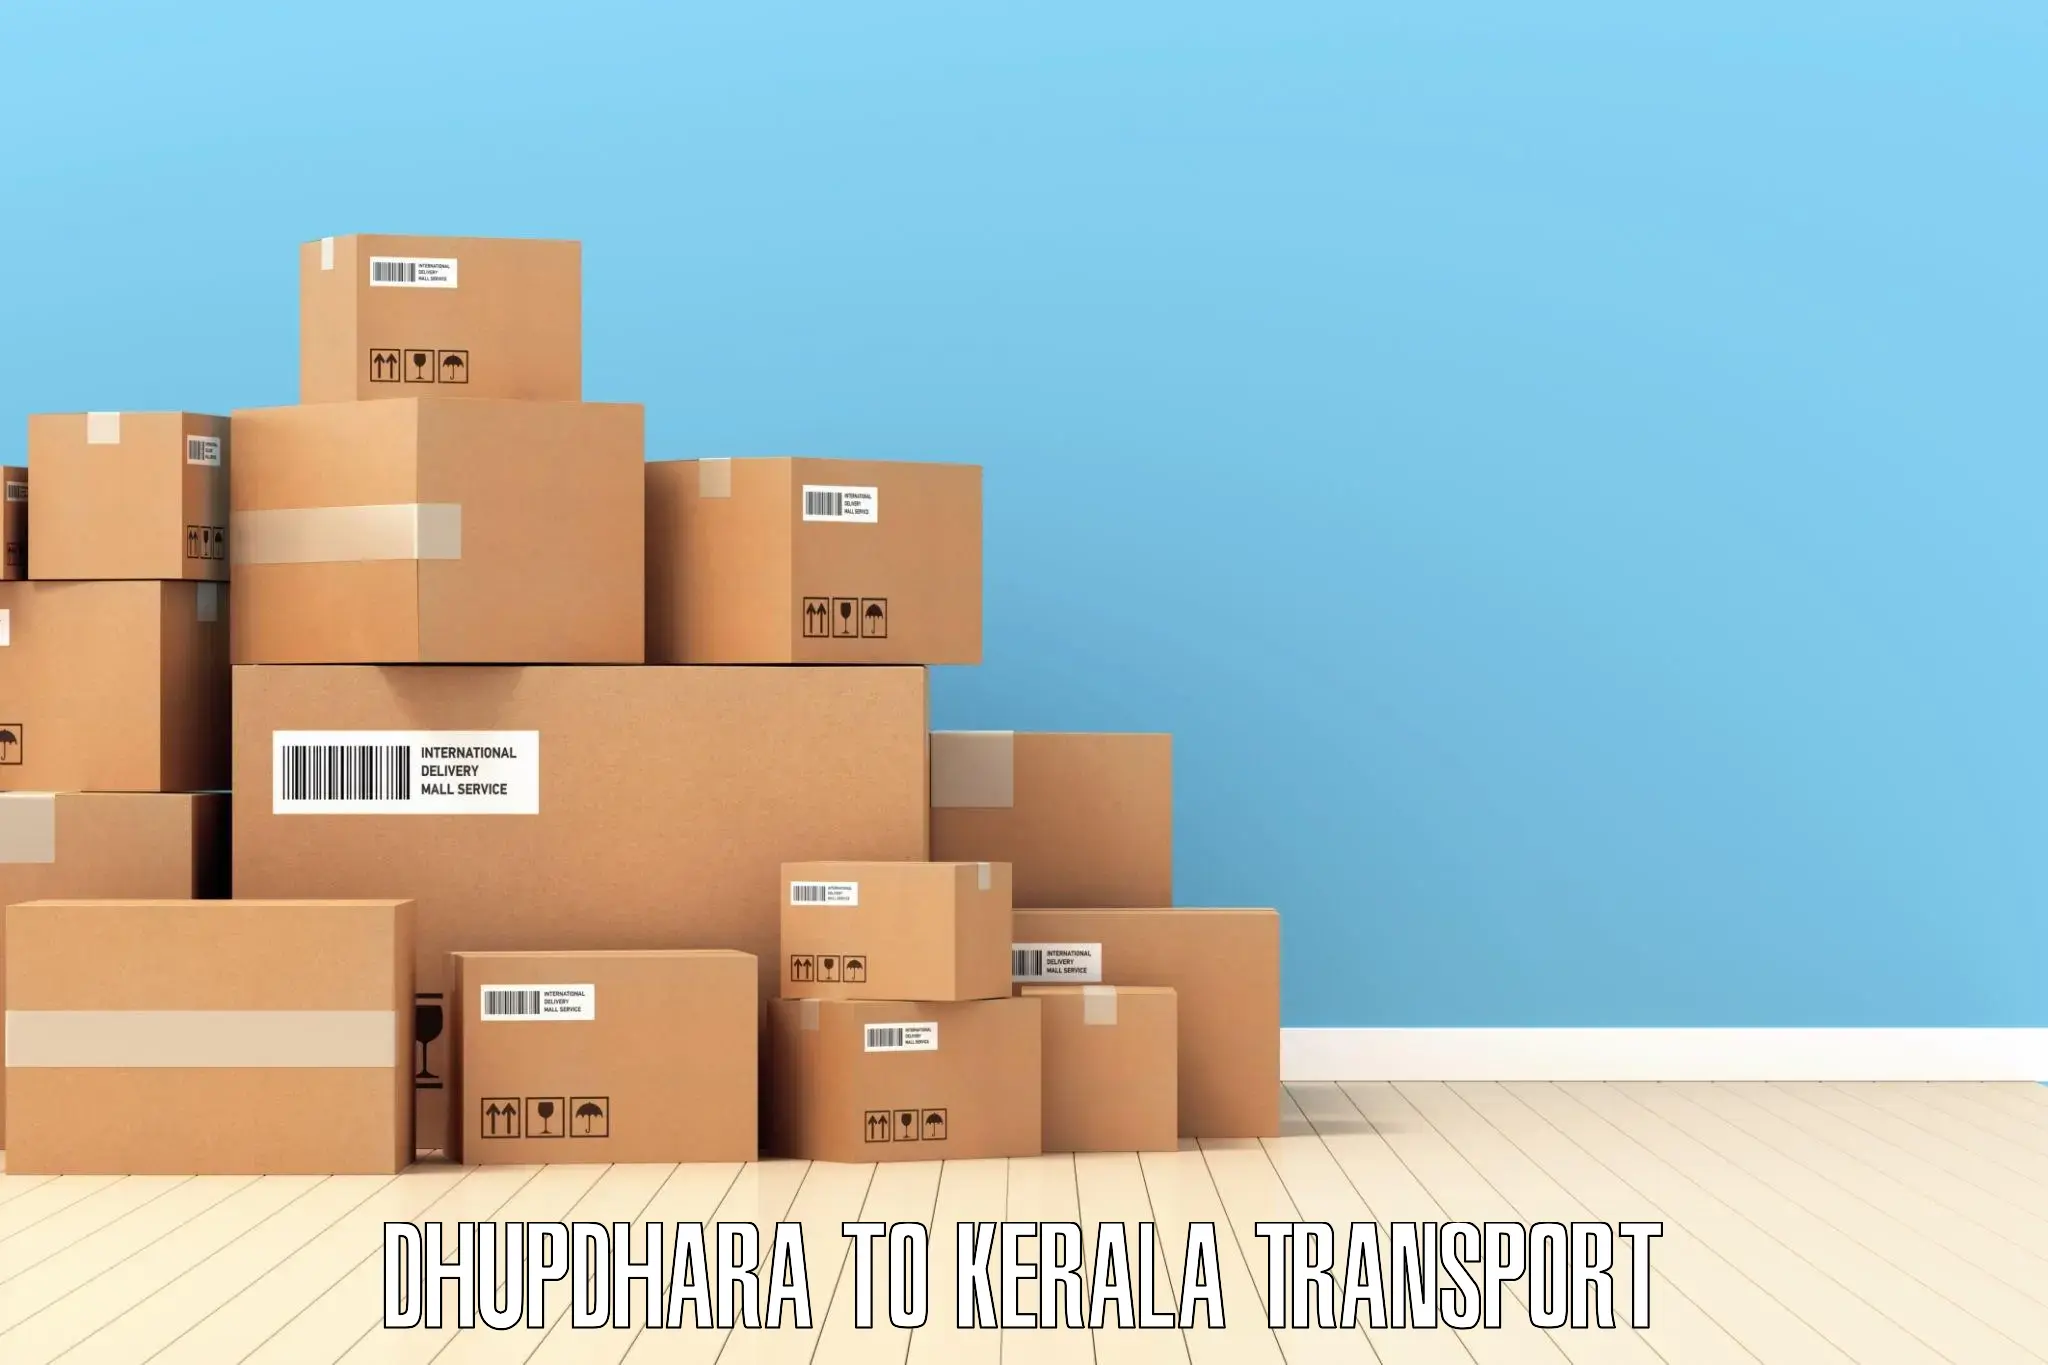 International cargo transportation services Dhupdhara to Kerala